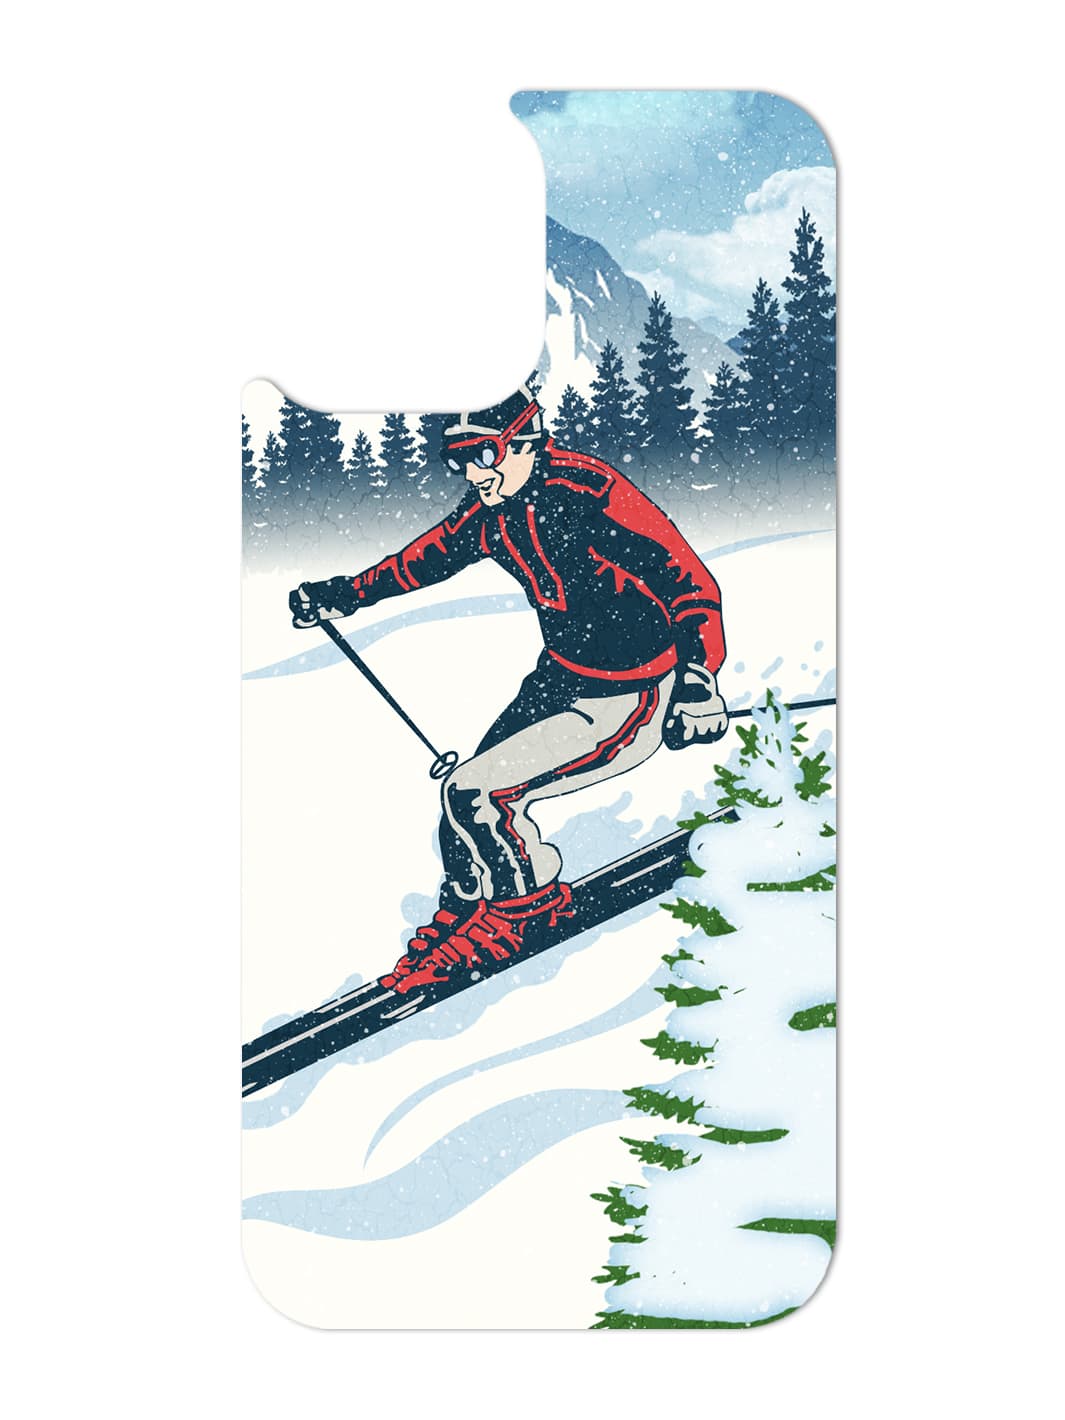 Swap - Male Skier